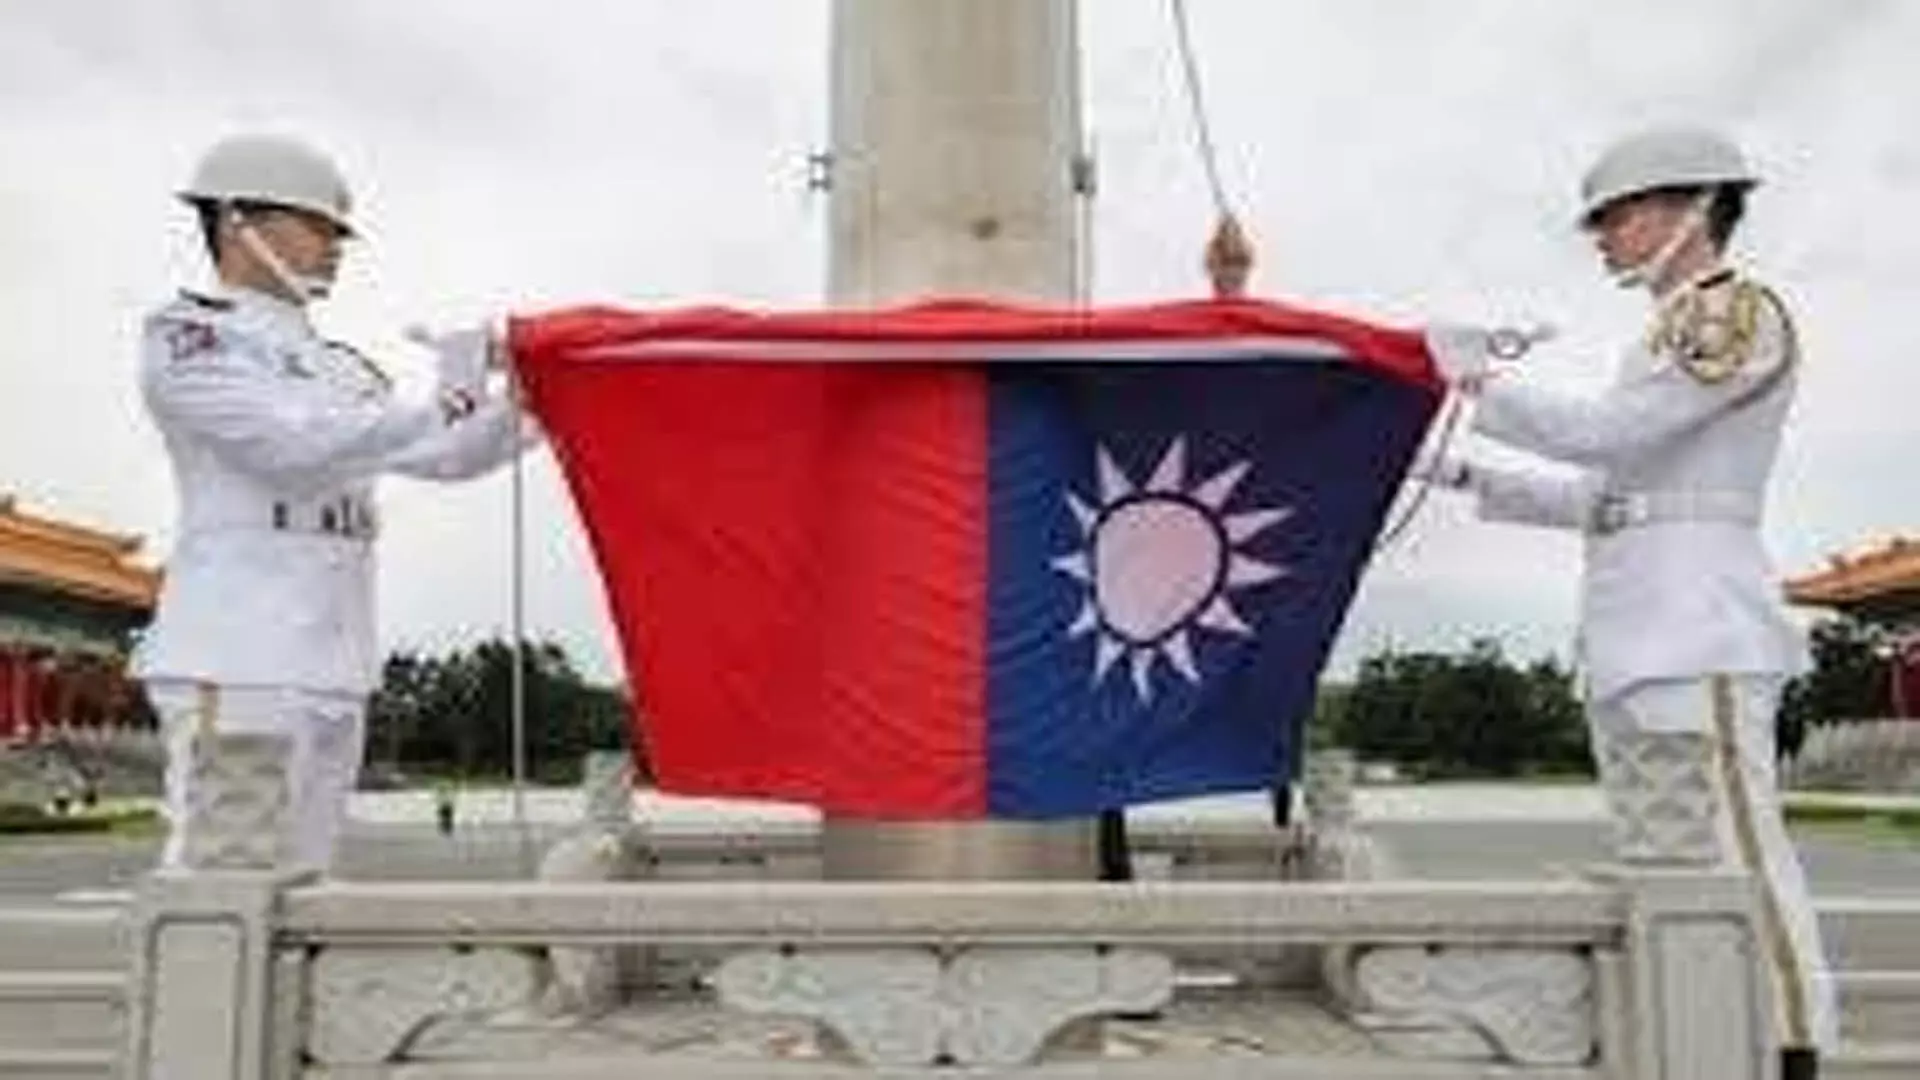 Taipei : ताइवान ने नागरिकों से चीन, मकाऊ और हांगकांग की यात्रा से बचने का आग्रह किया